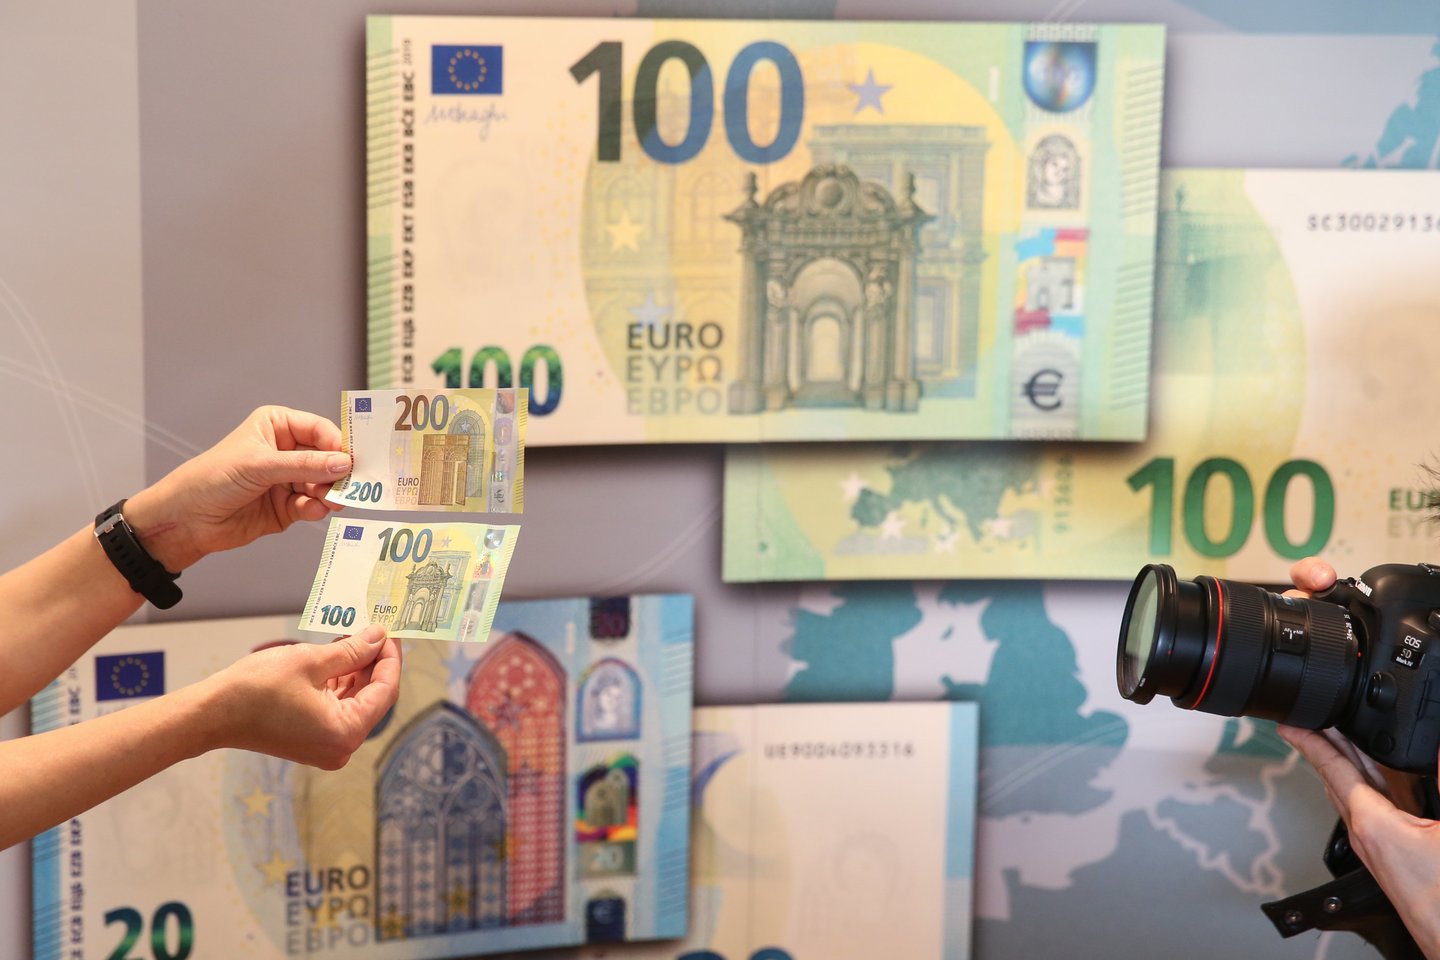 Dėl išaugusių indėlių skaičiaus bankuose susikaupė apie 8 mlrd. eurų laisvų lėšų.<br>R.Danisevičiaus nuotr.